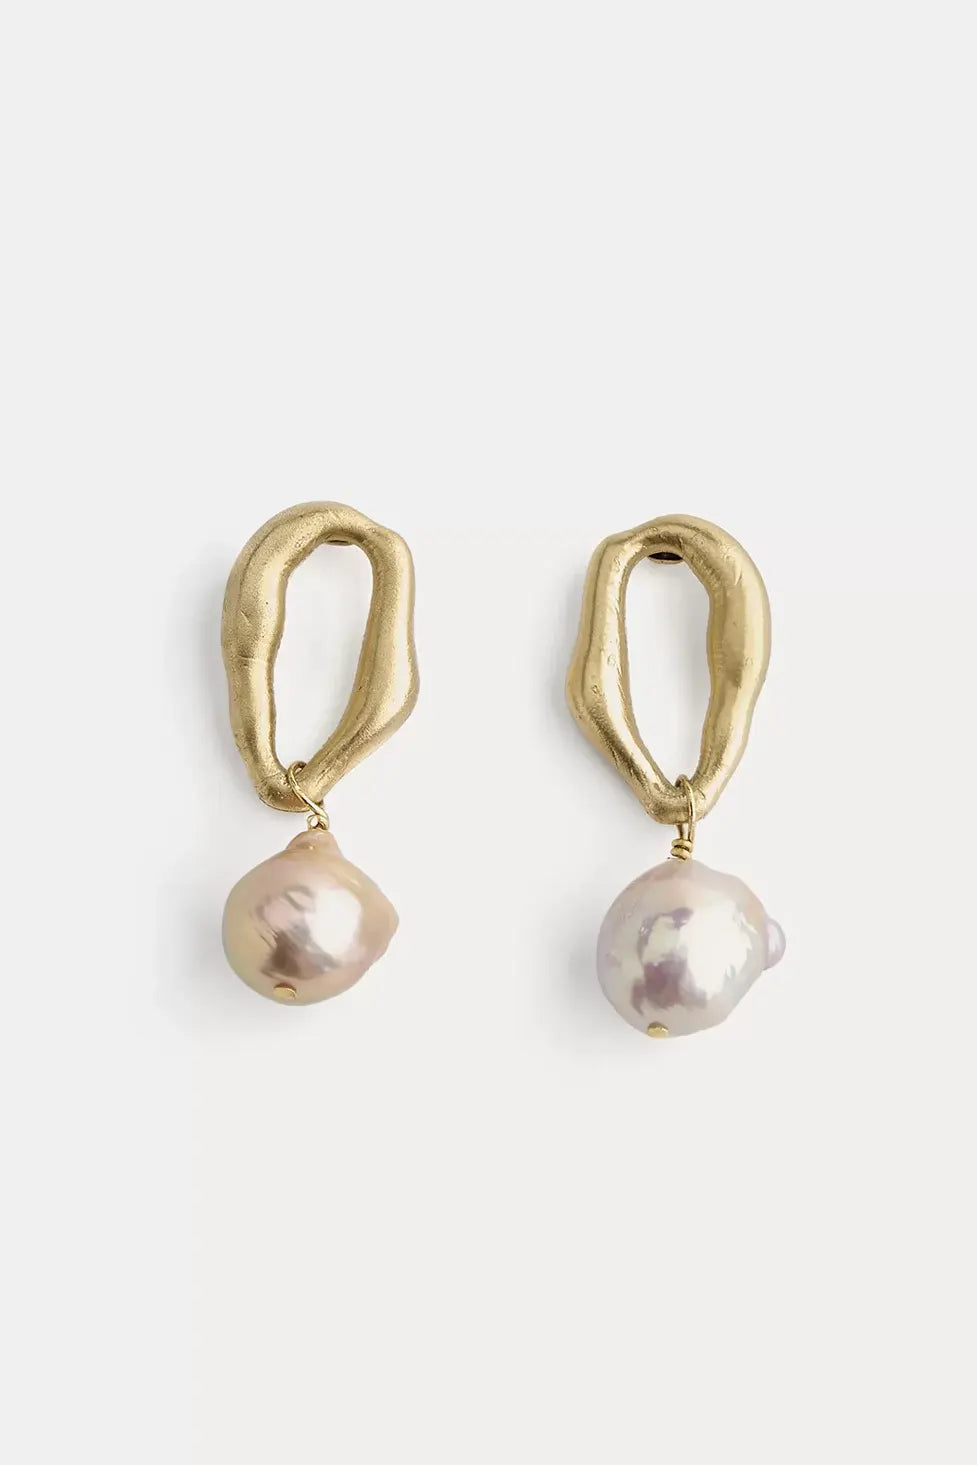 Pearl drop earrings, gold